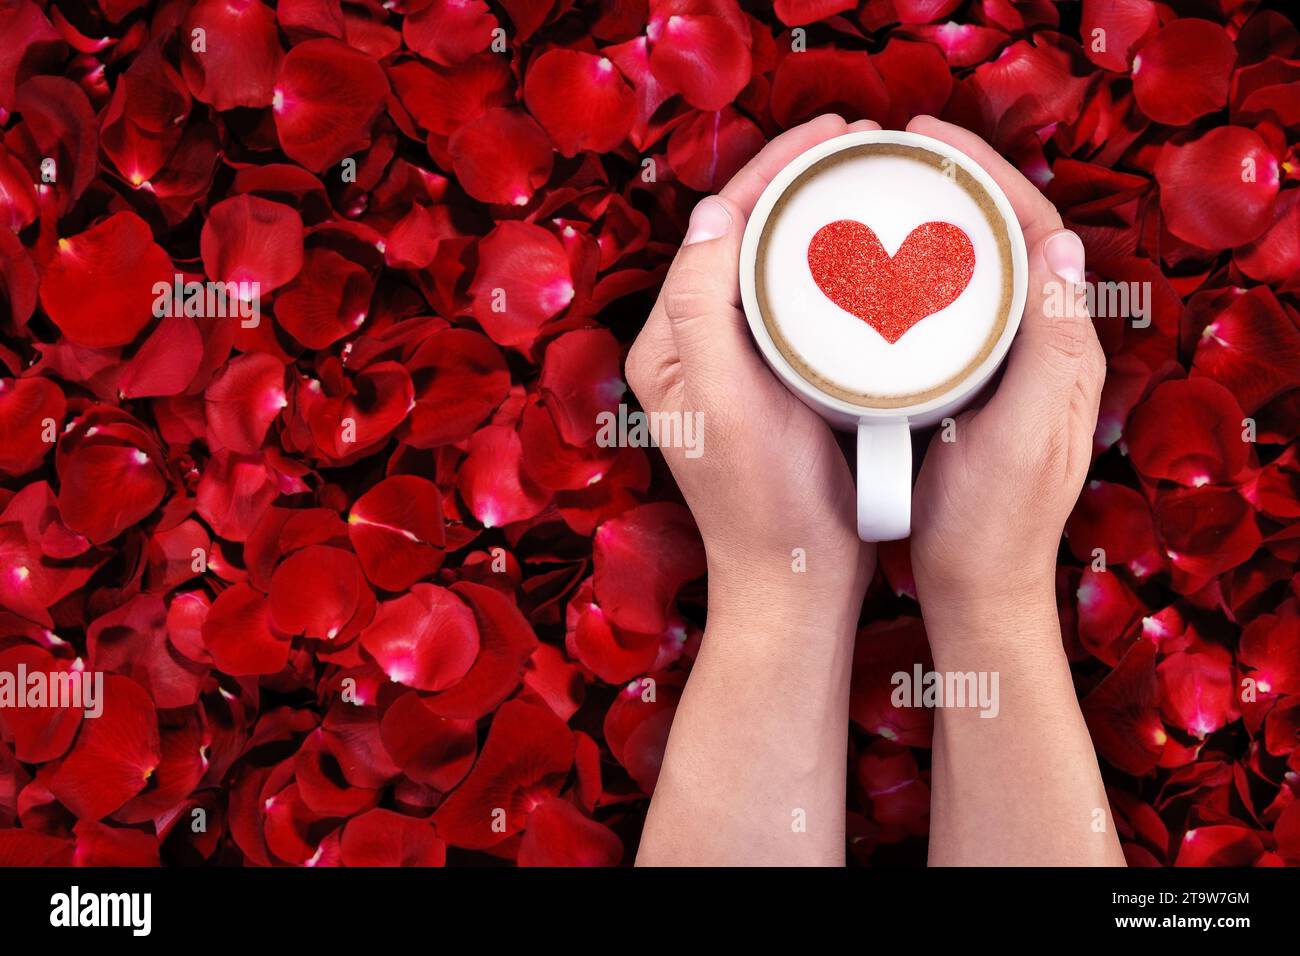 uomo che regge una tazza calda di latte su fondo di petali di rosa rossi, con forma a cuore rosso, concetto di amore per san valentino Foto Stock